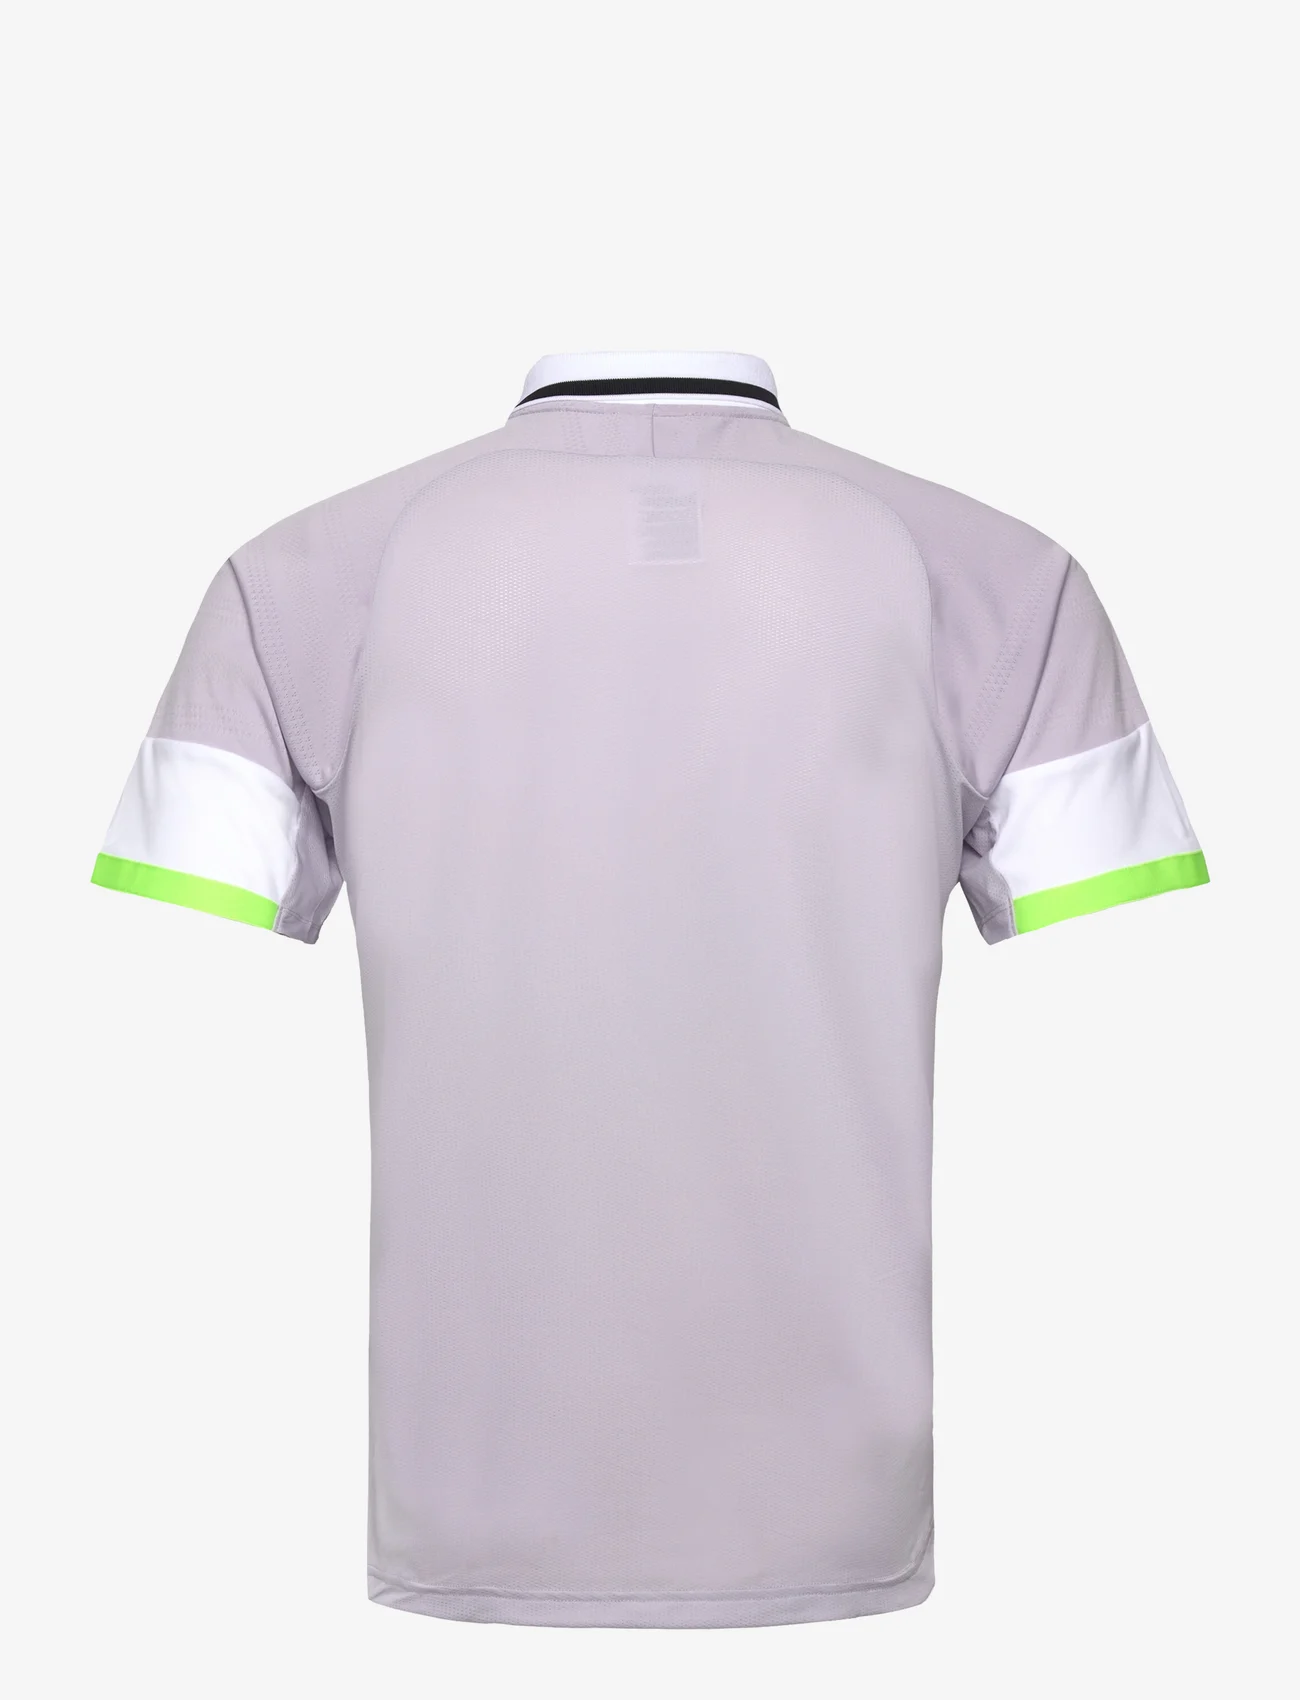 Asics - MEN MATCH POLO-SHIRT - kortermede t-skjorter - dusk violet/soft sky - 1